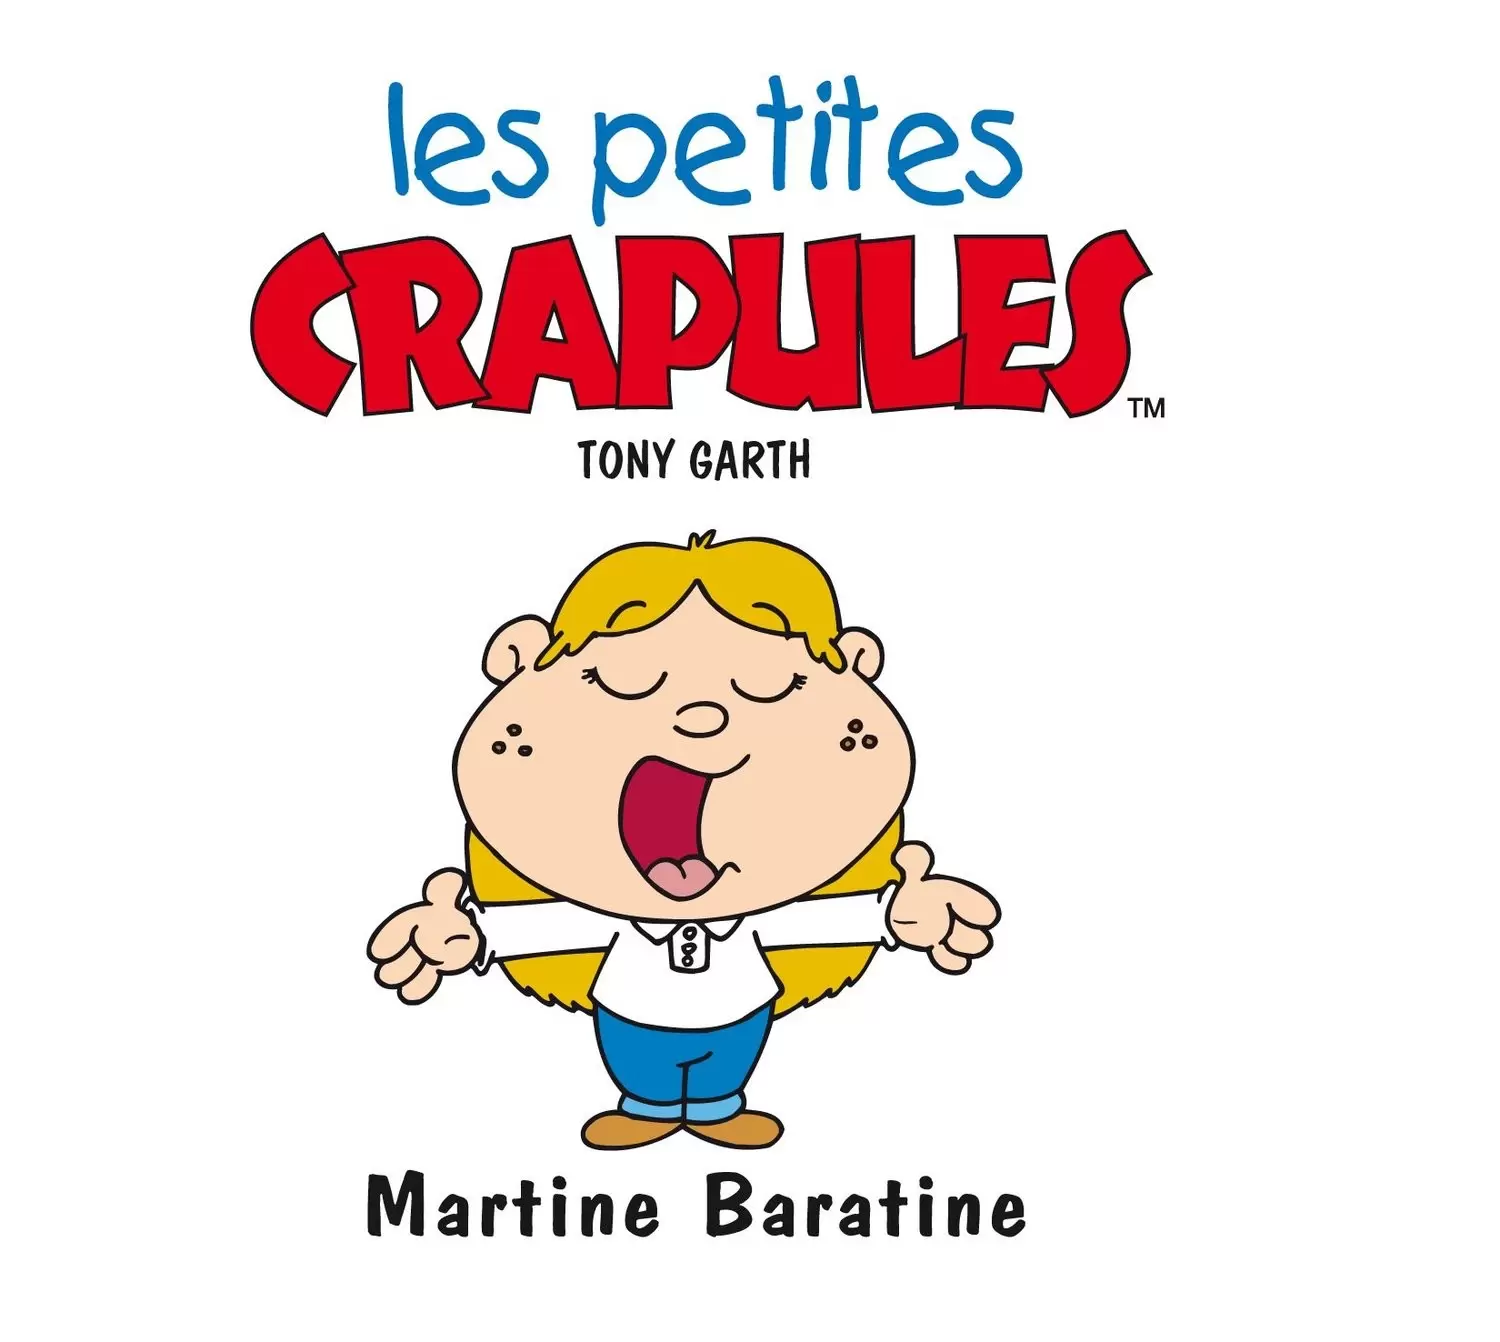 Les petites crapules - Martine Baratine